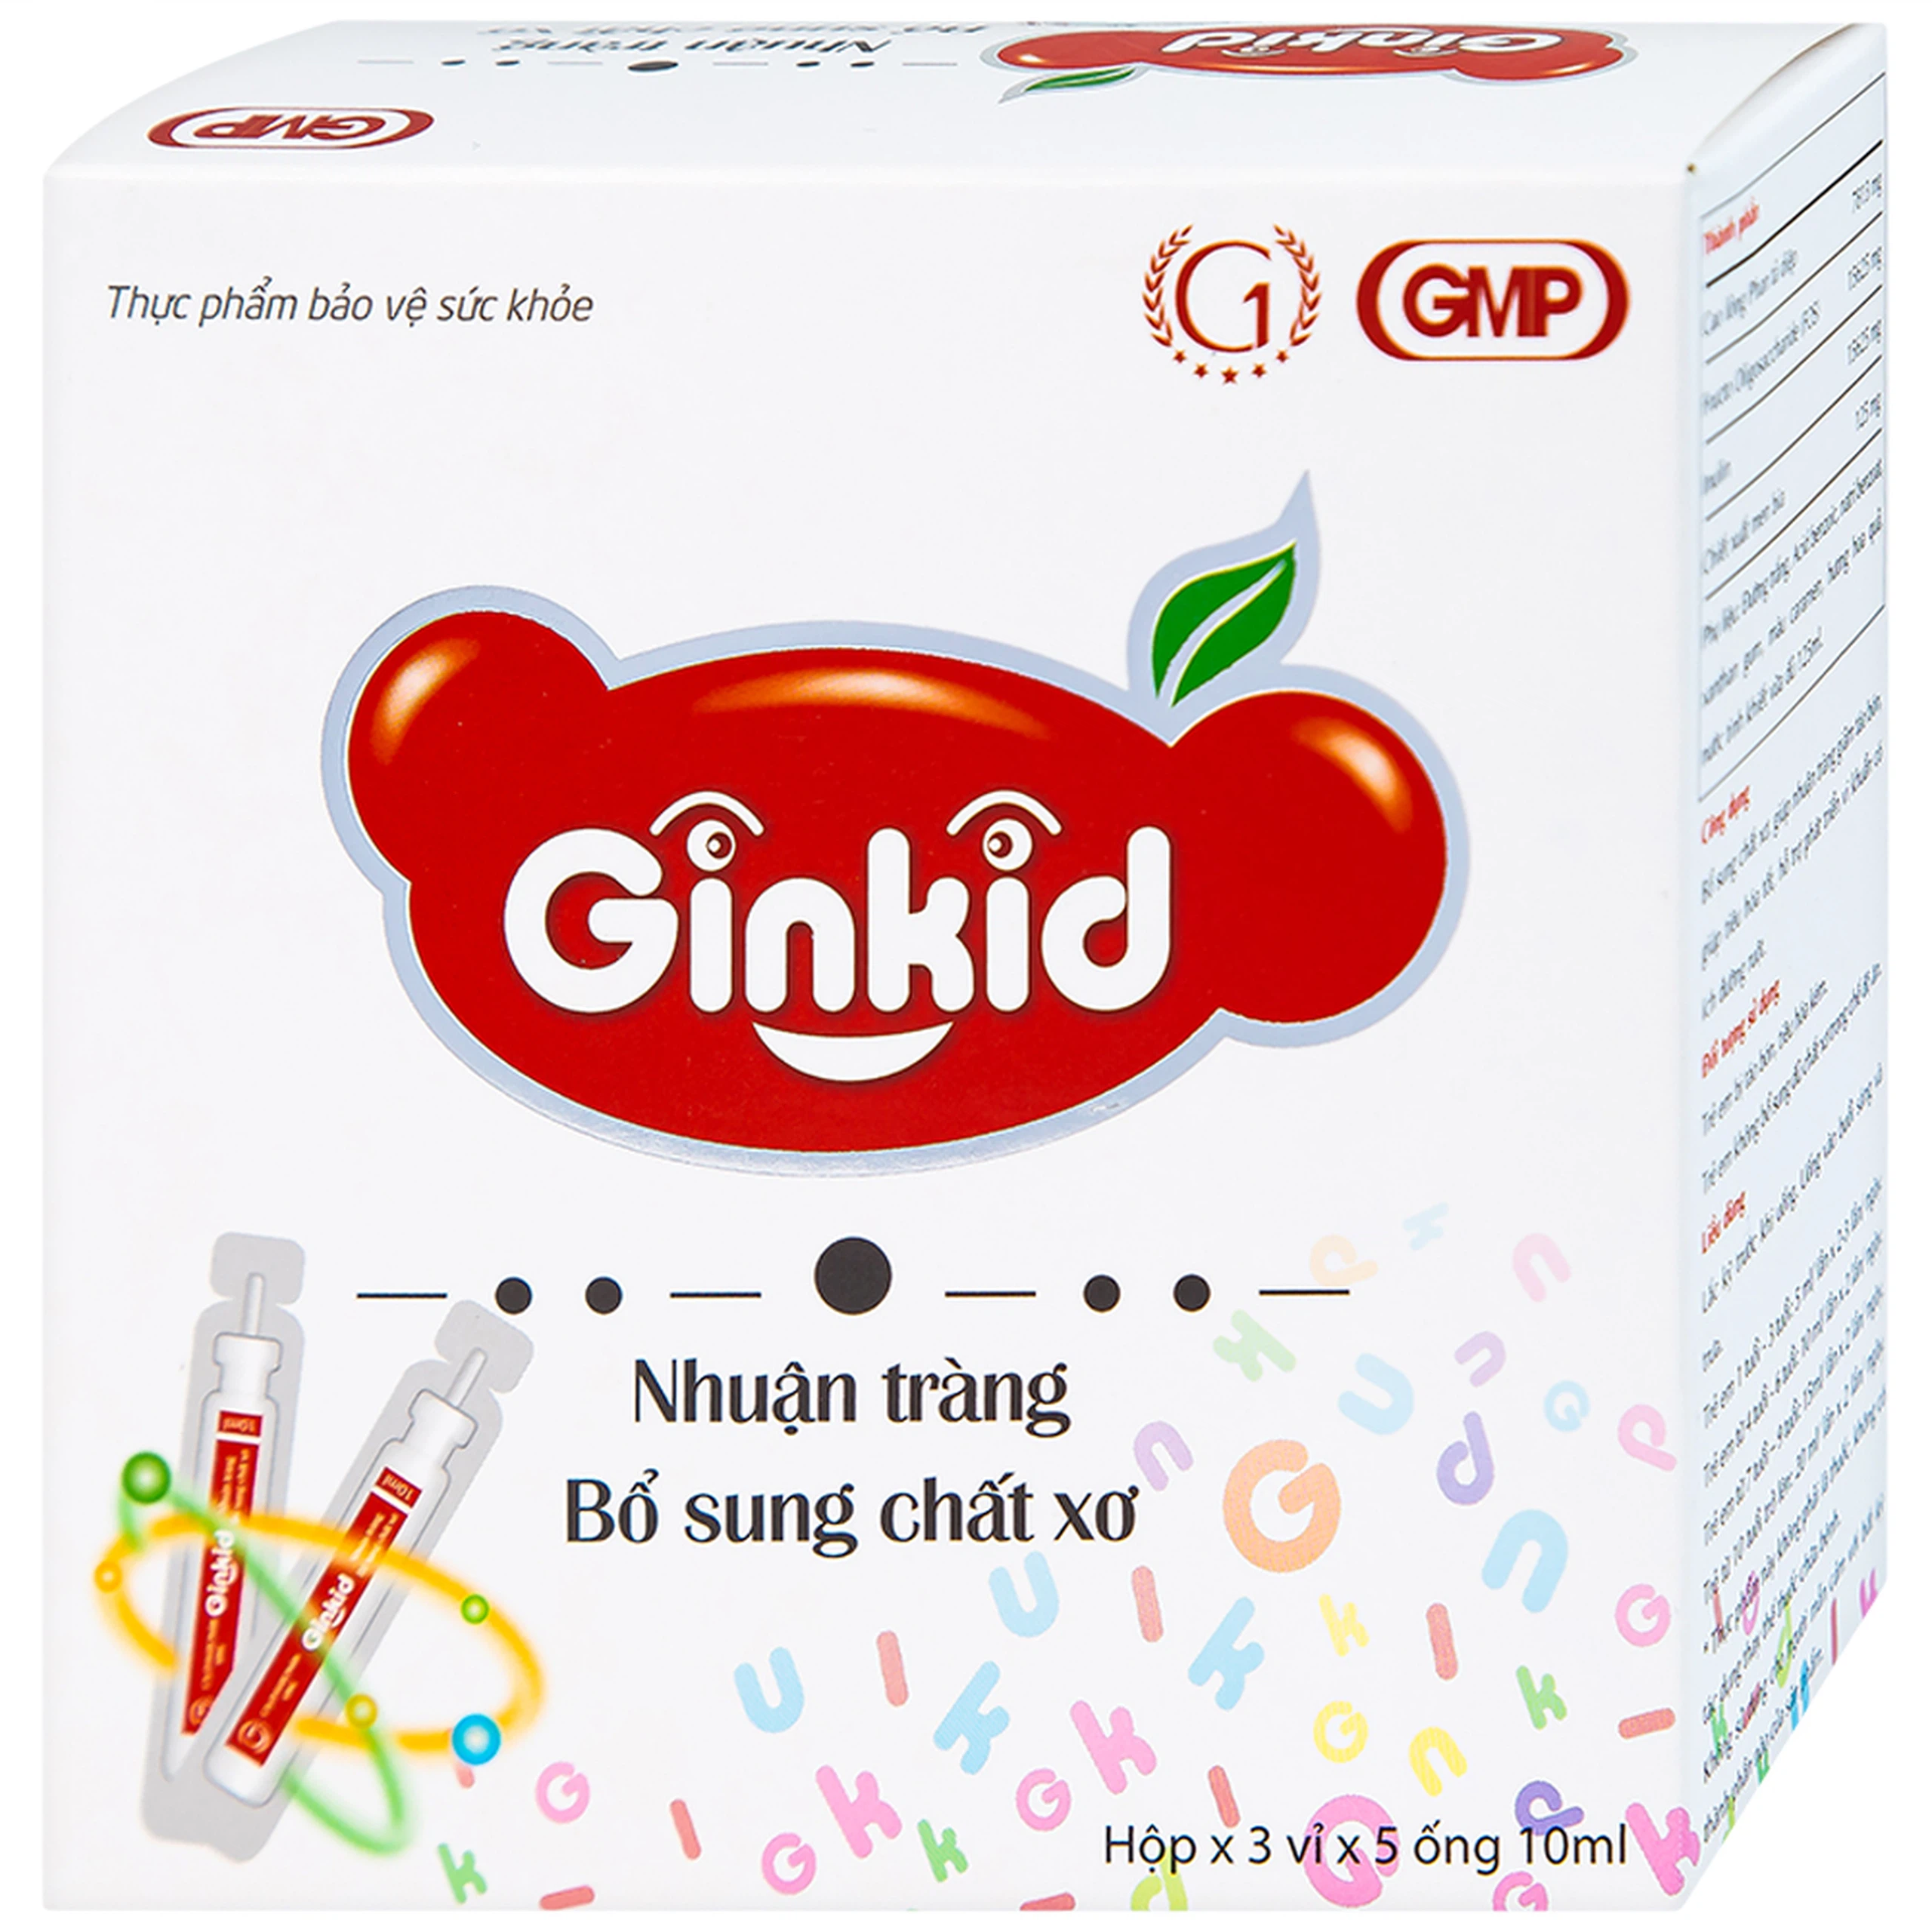 Siro Ginkid GINIC nhuận tràng, bổ sung chất xơ (3 vỉ x 5 ống x 10ml)